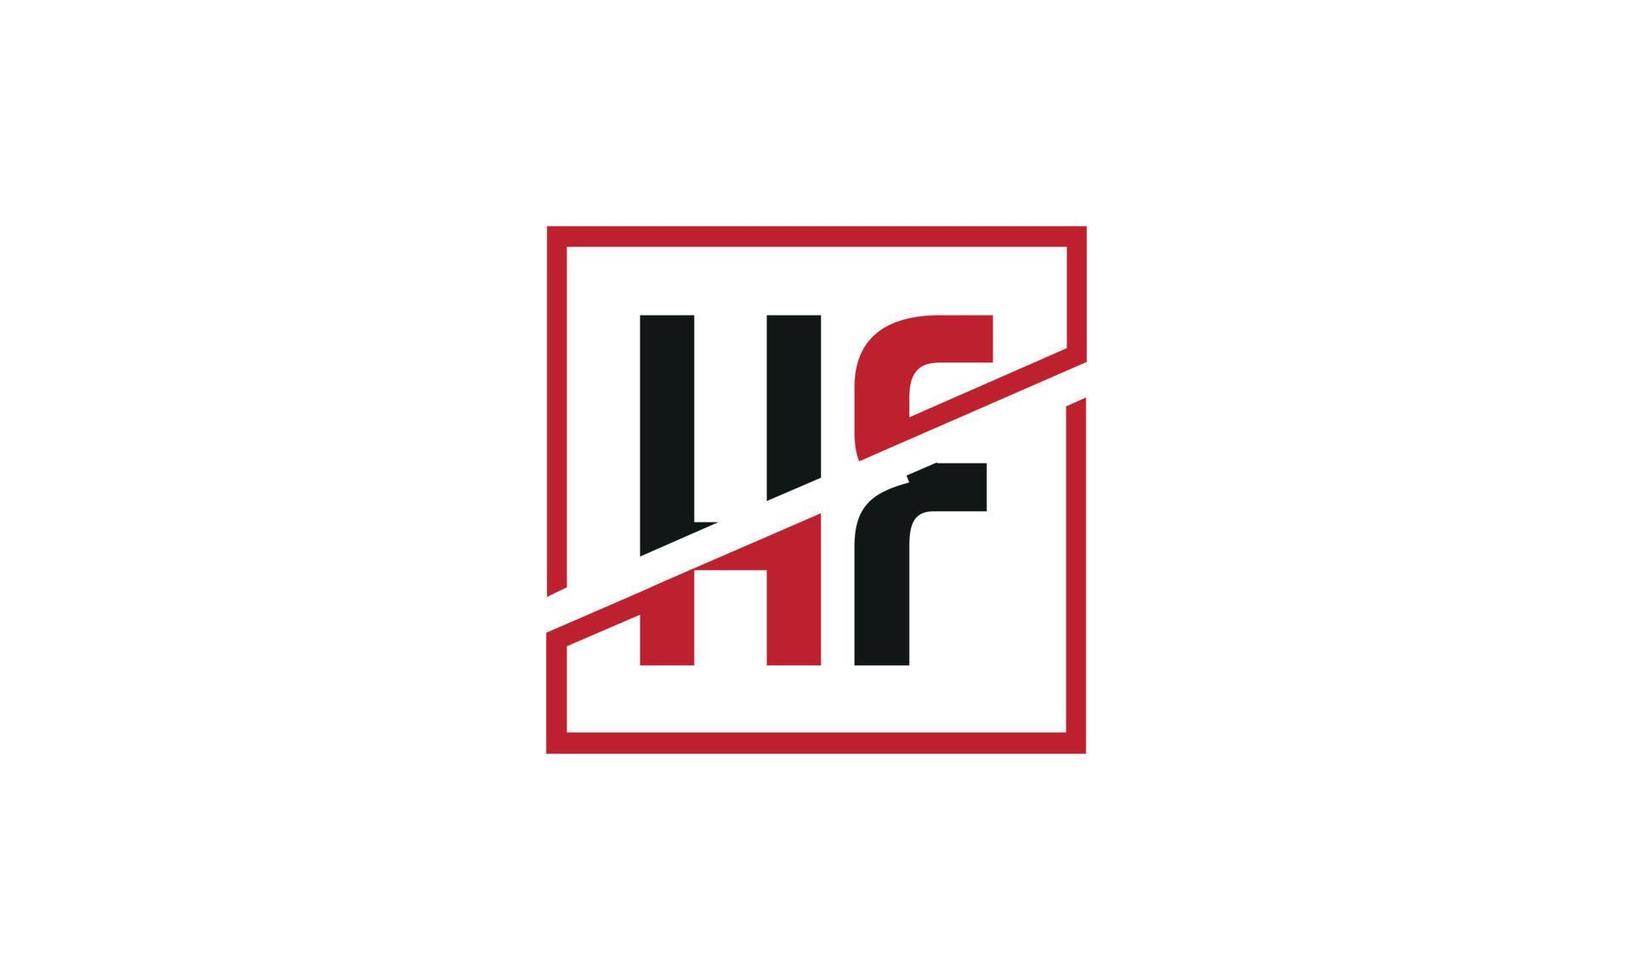 hf-Logo-Design. anfängliches hf-buchstabenlogo-monogrammdesign in schwarzer und roter farbe mit quadratischer form. Pro-Vektor vektor